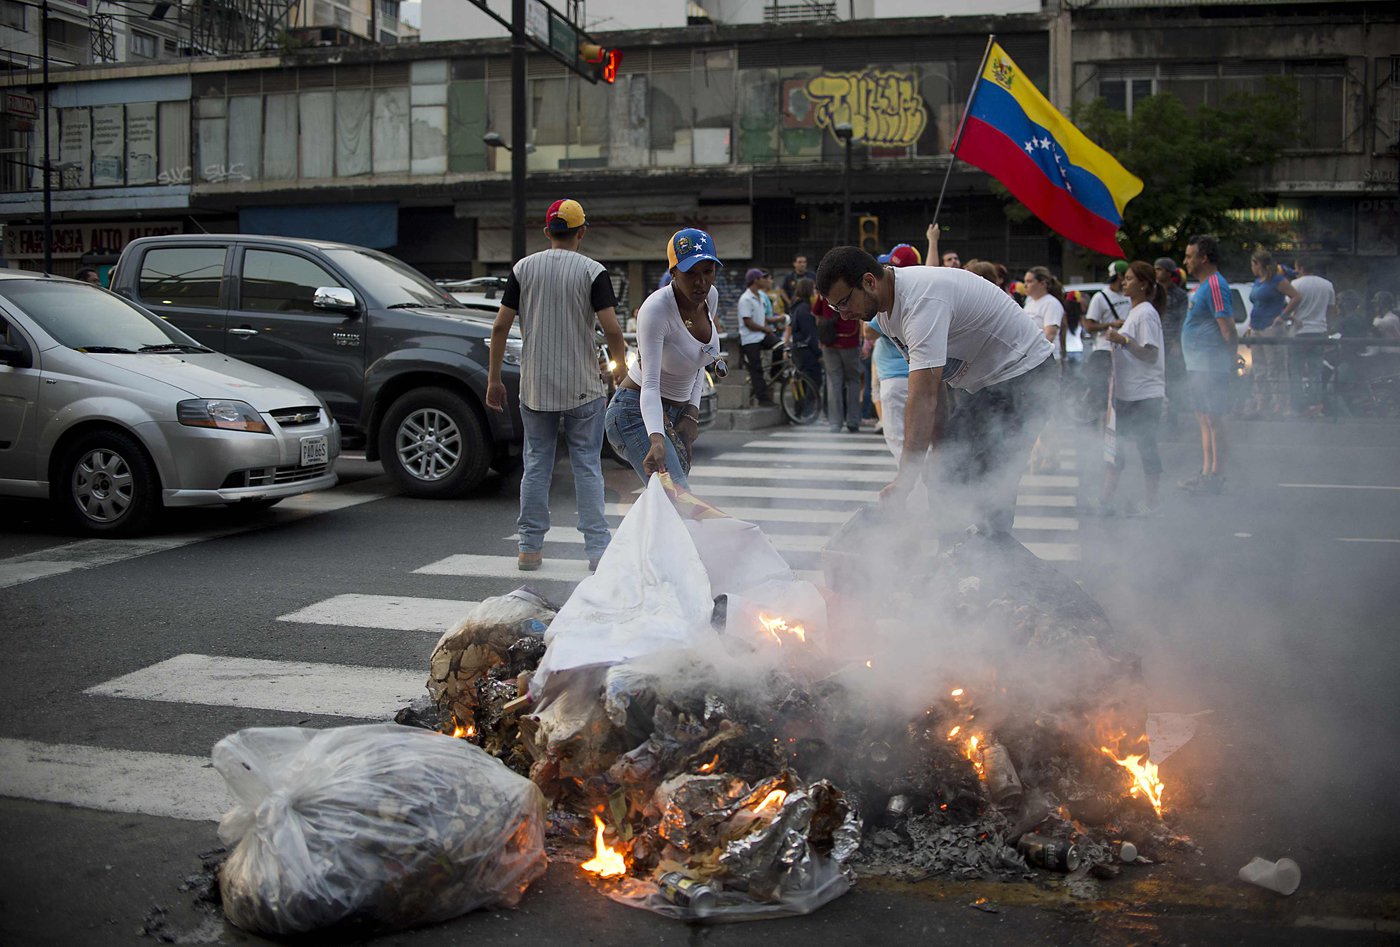 Venezuela's worsening economic crisis